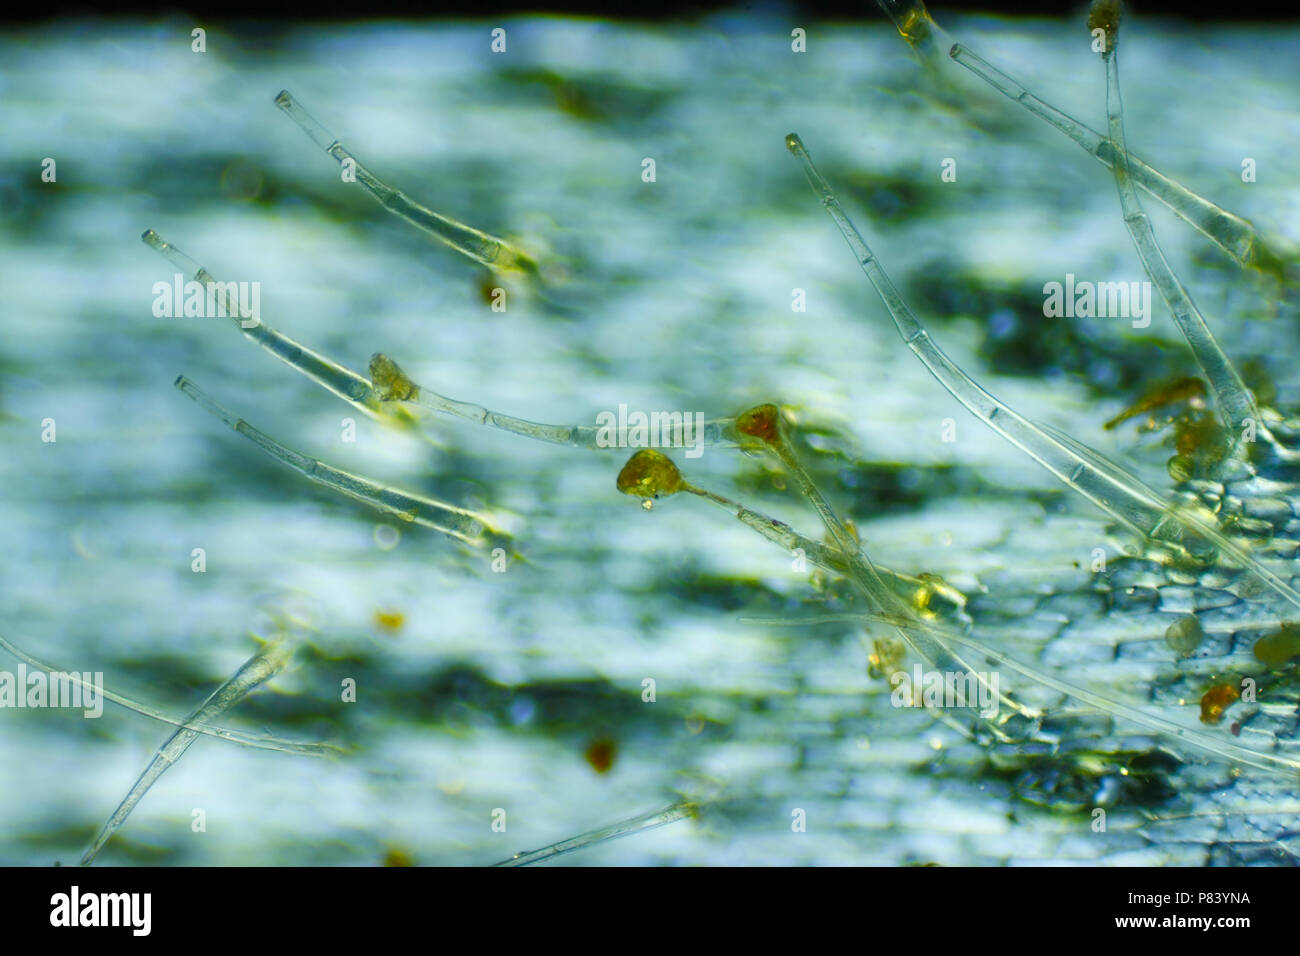 Vista microscopica del giardino (geranio Pelargonium x hortorum) tricomi (peli). Luce polarizzata, polarizzatori incrociati. Foto Stock